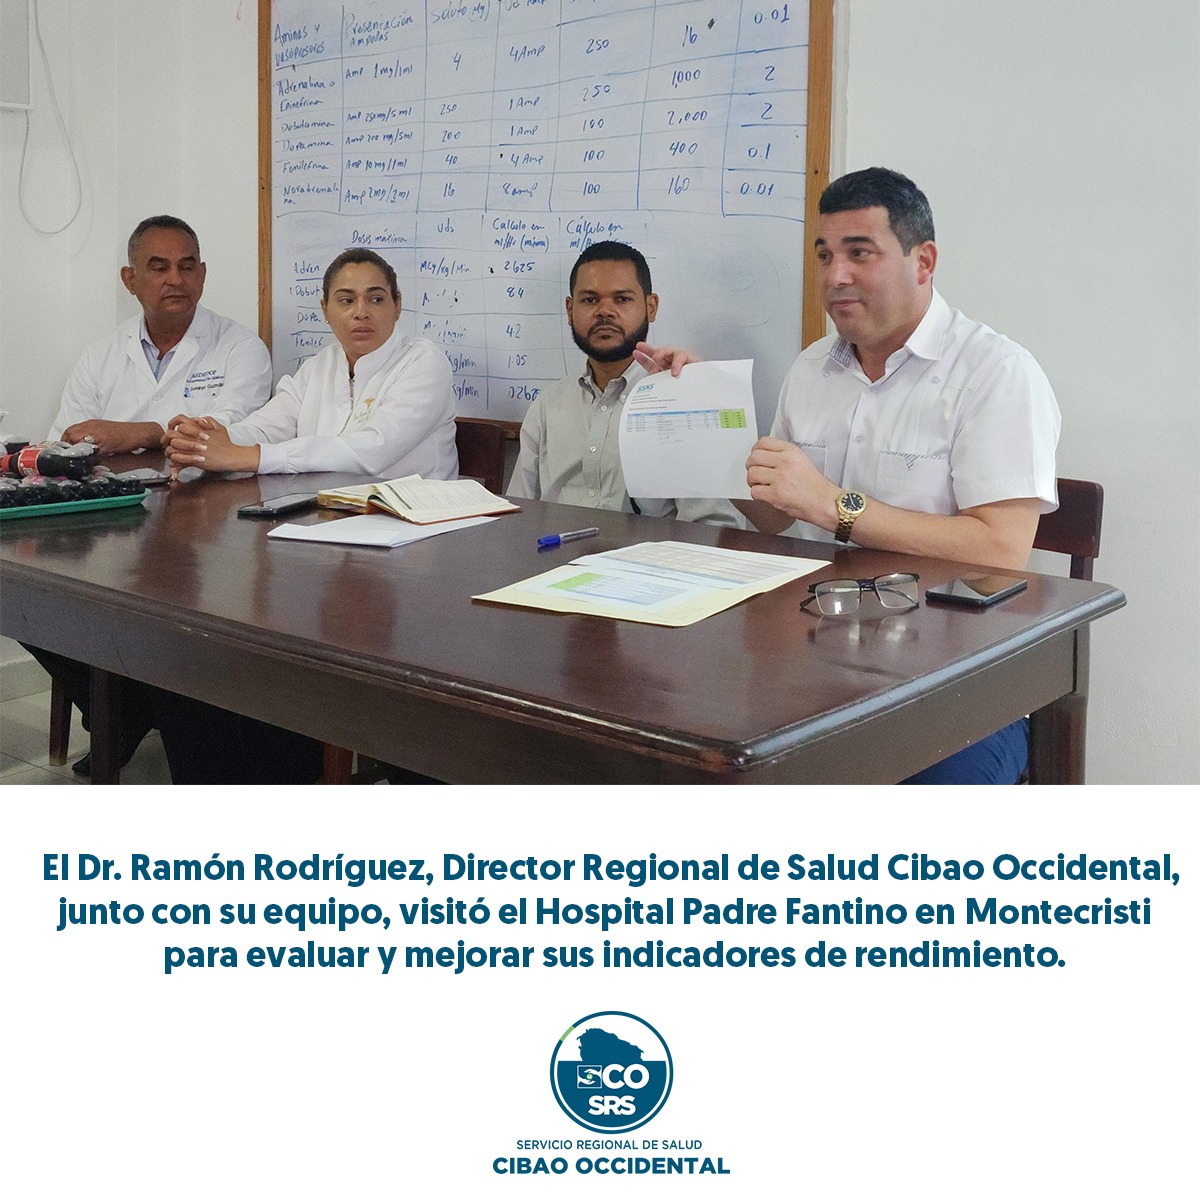 EL DOCTOR RAMÓN RODRÍGUEZ Y SU EQUIPO VISITAN EL HOSPITAL PADRE FANTINO EN MONTECRISTI.